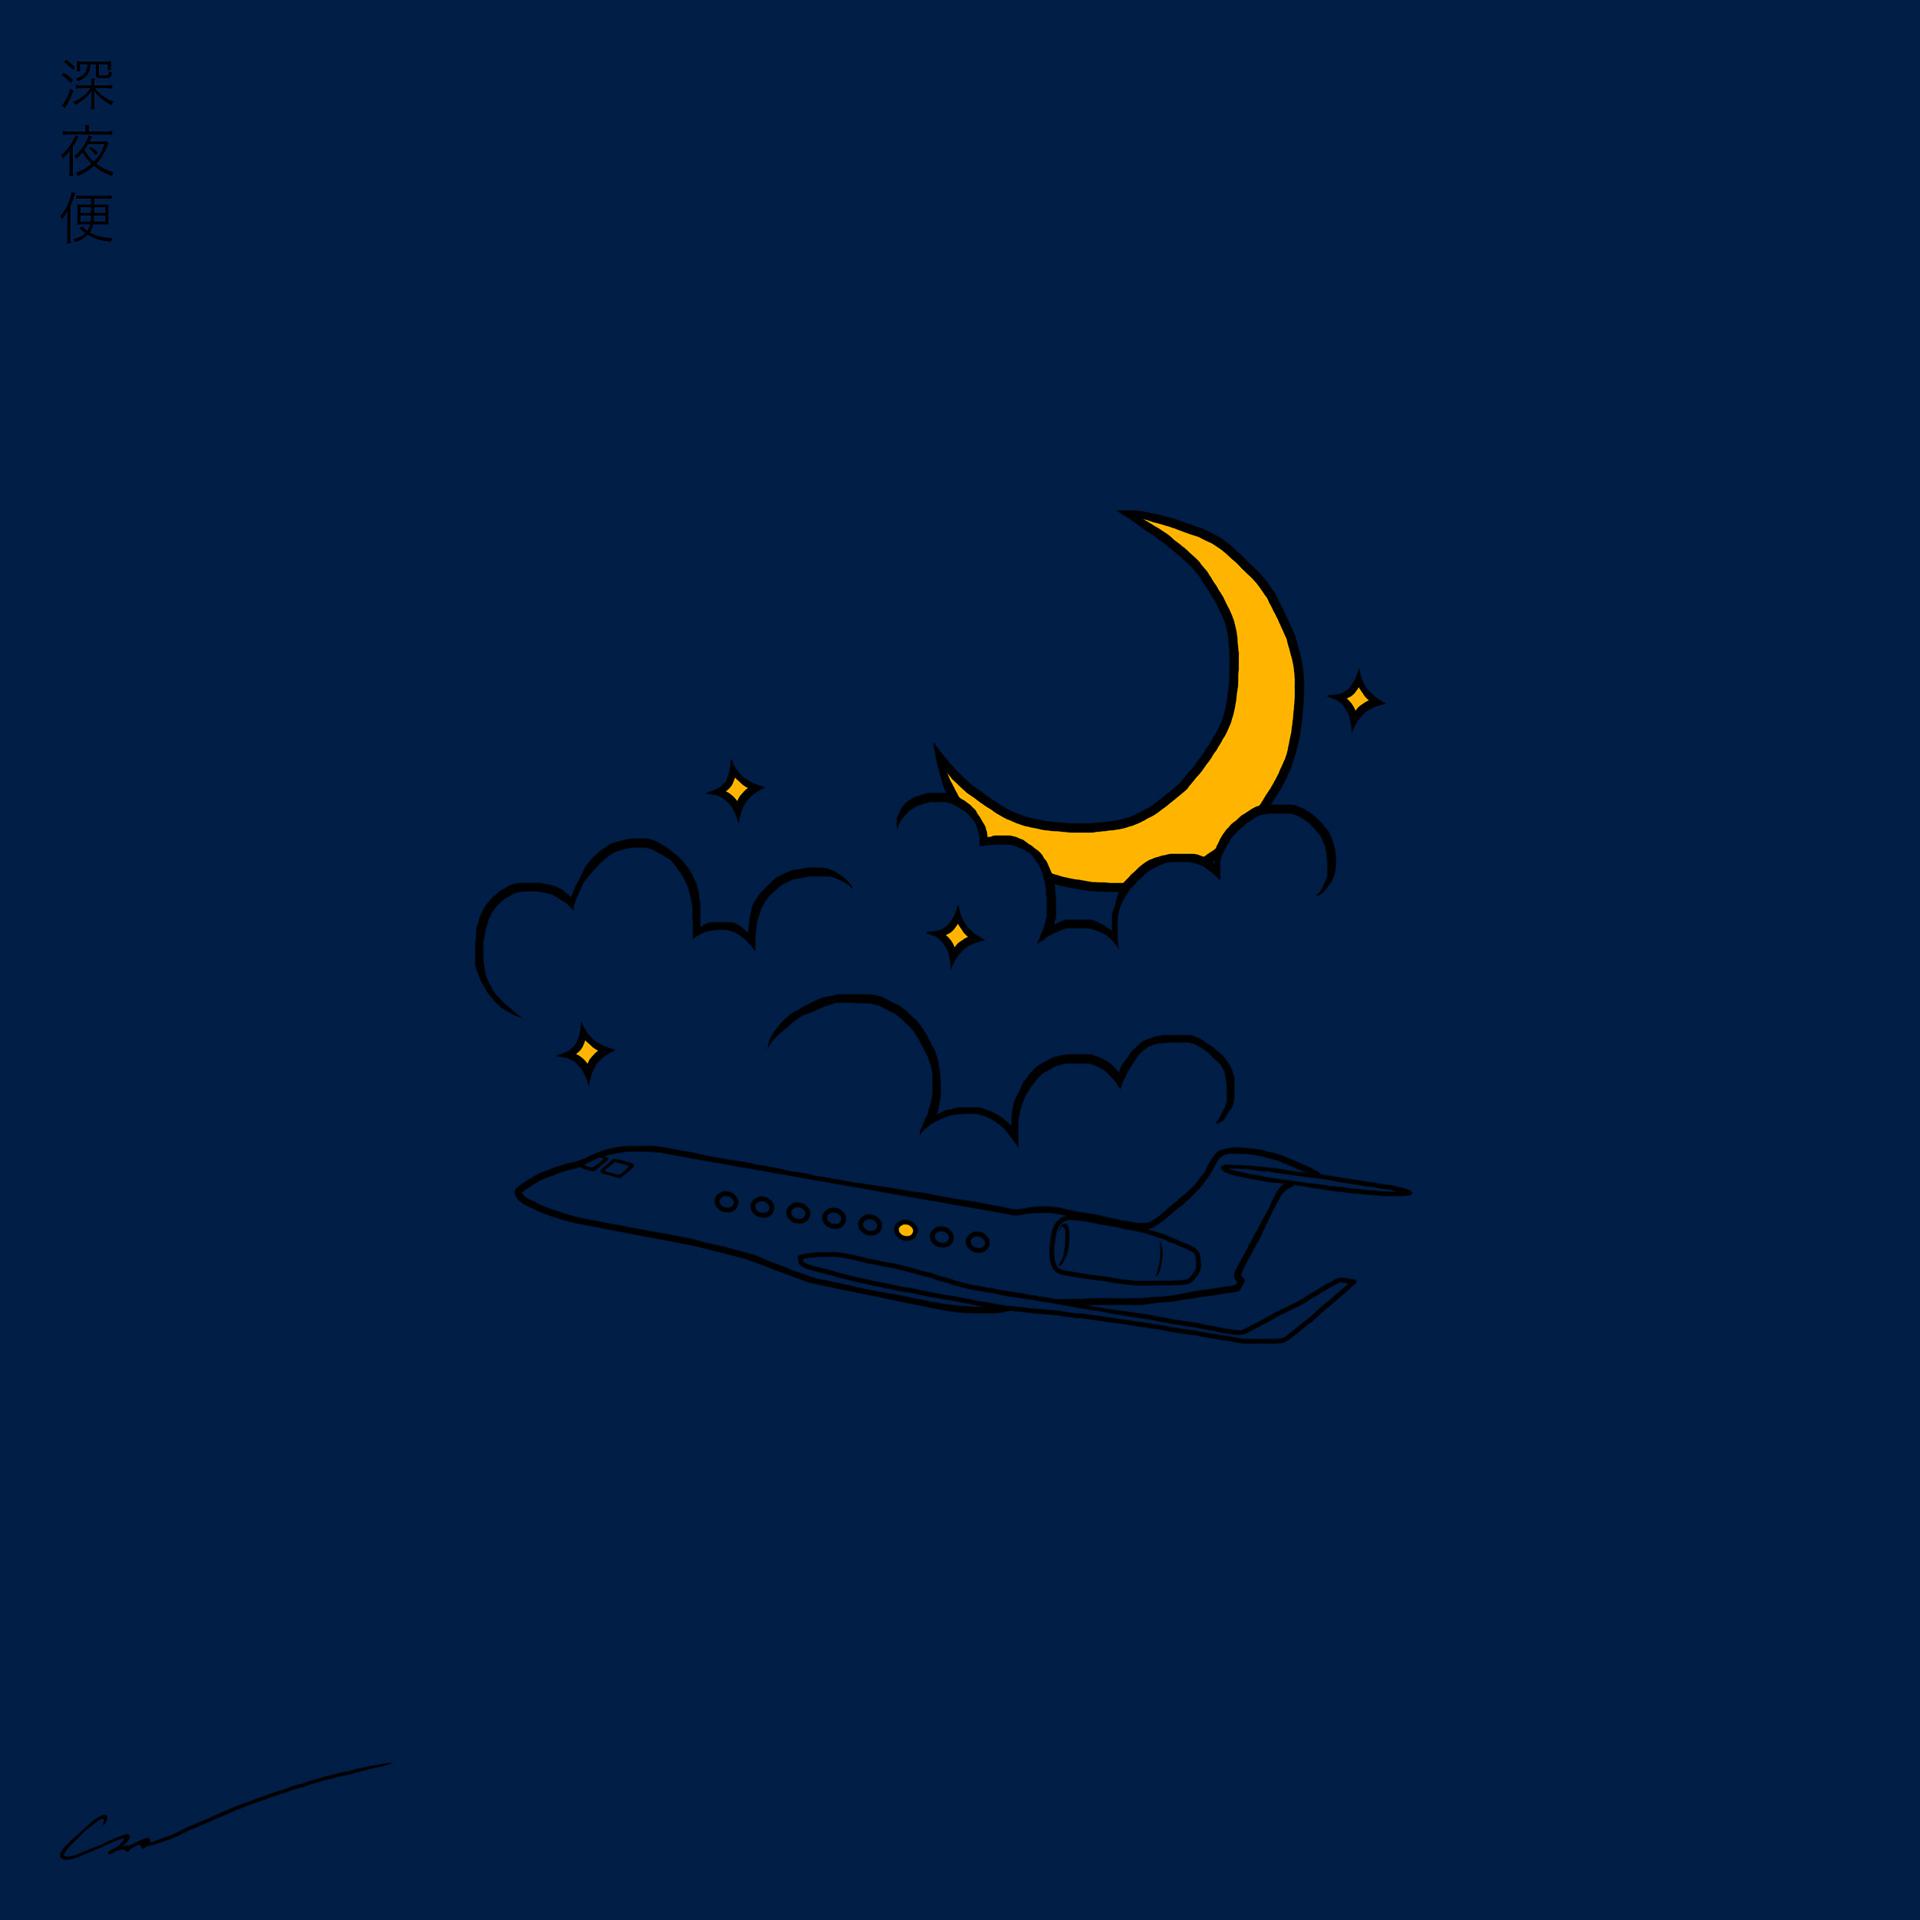 Постер альбома Midnight Flight